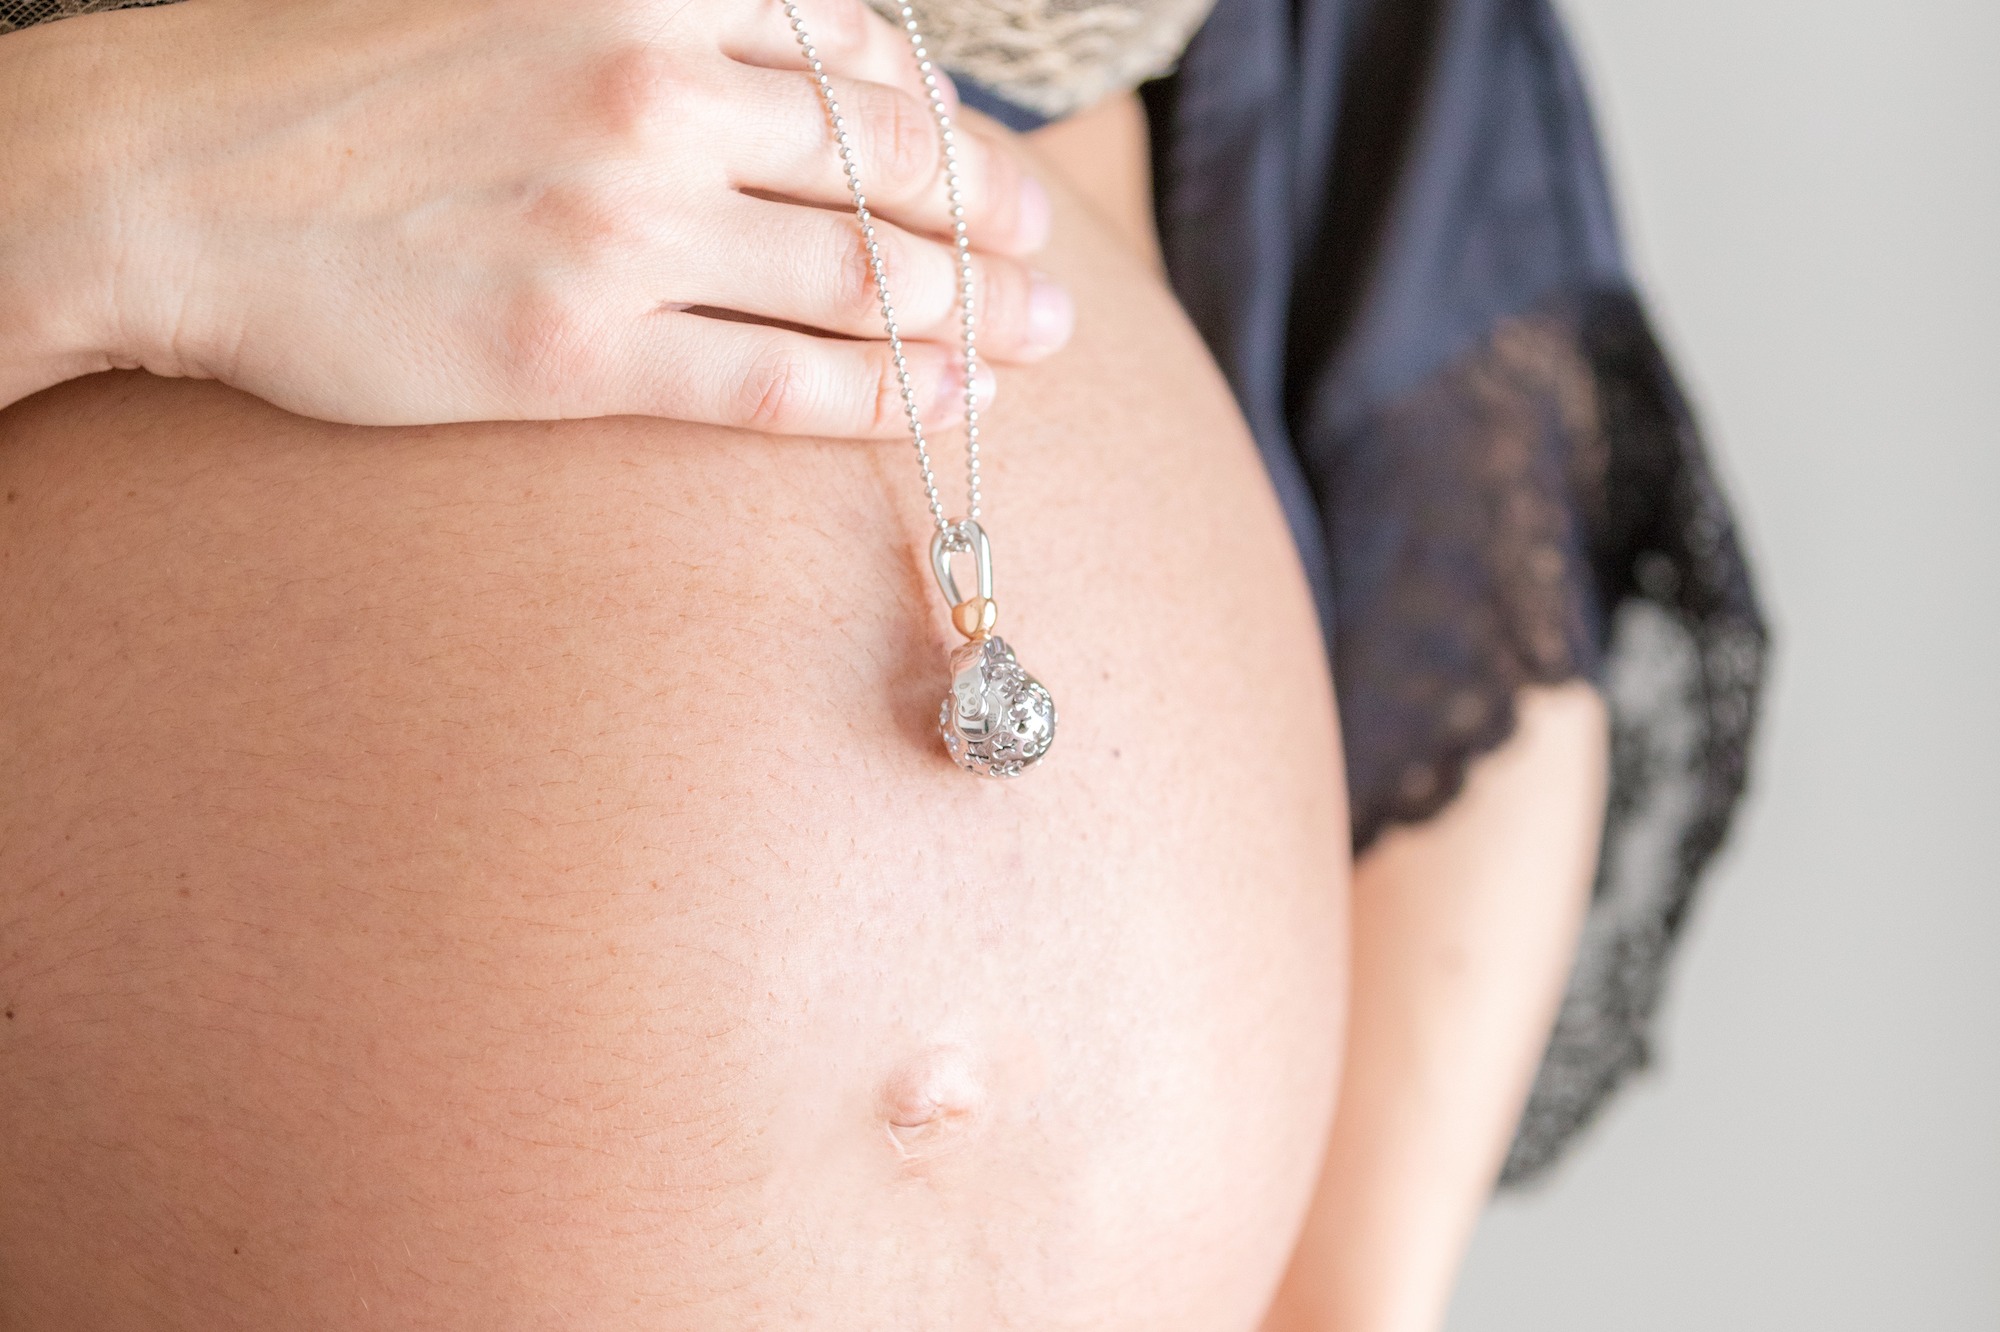 Pourquoi les mamans aiment le collier d'ambre pour les bébés ? - Cap-eveil